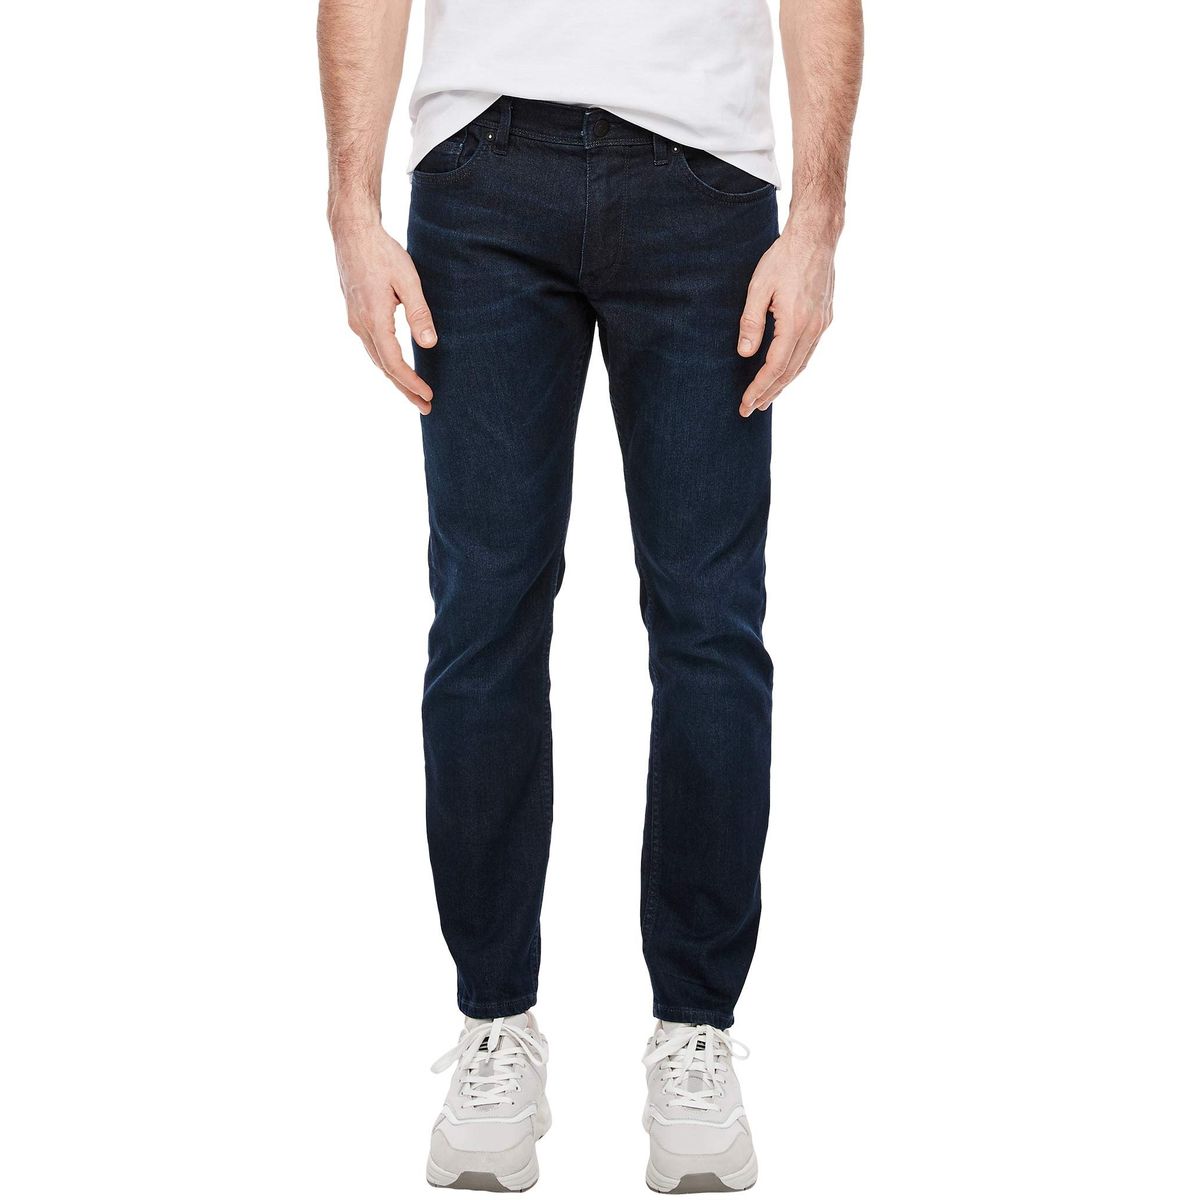 S.Oliver Erkek Jeans / Kot Pantolon Fiyatları ve Modelleri